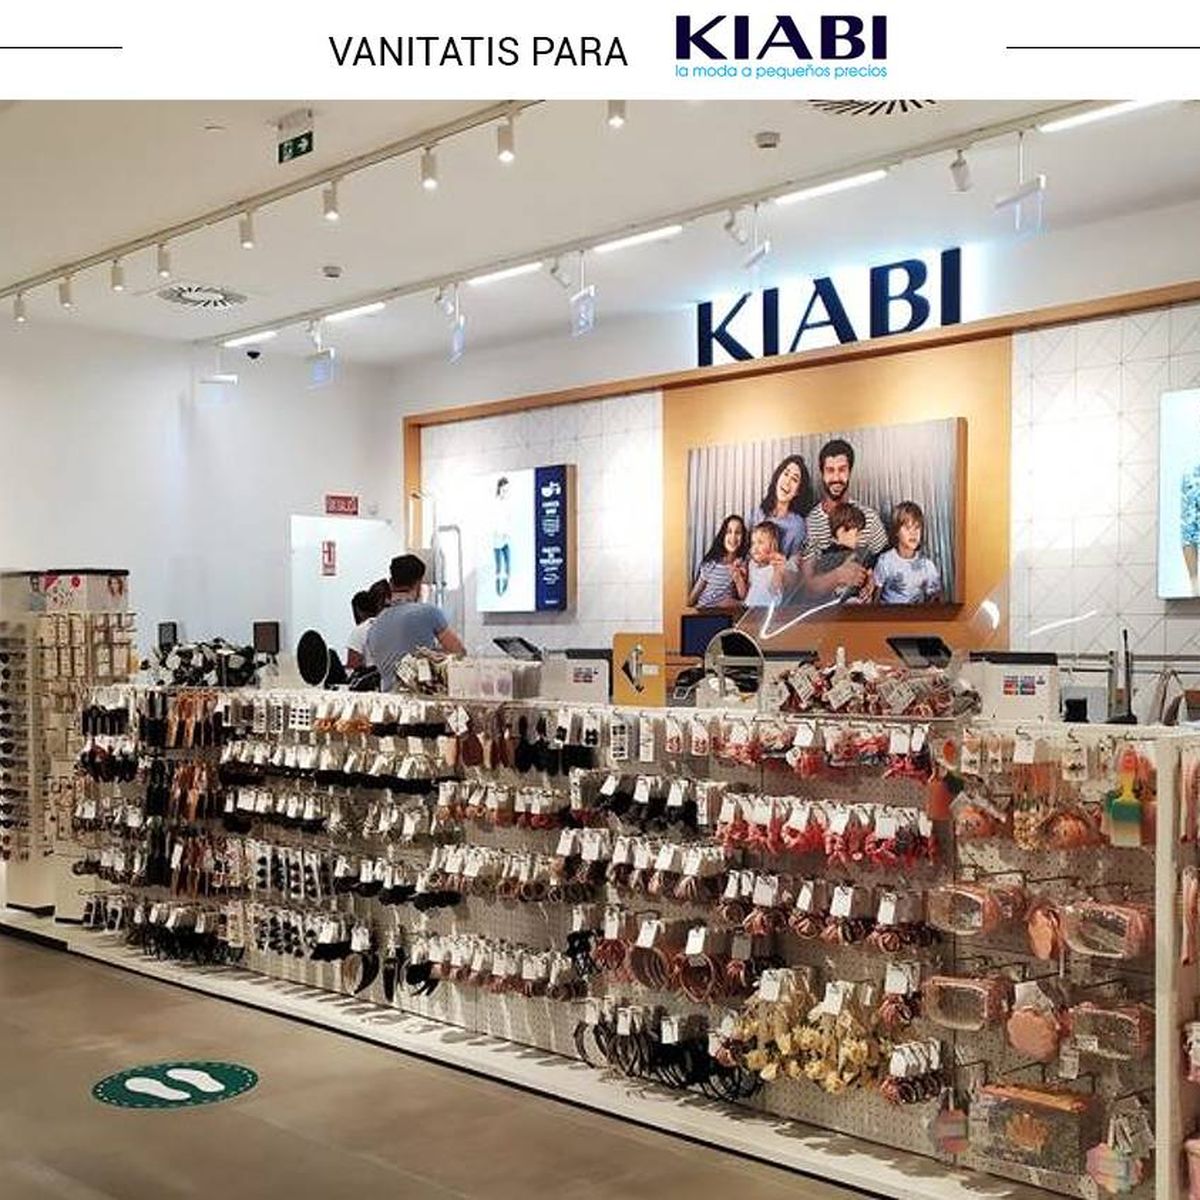 Kiabi transforma el Black Friday y apuesta compras más solidarias